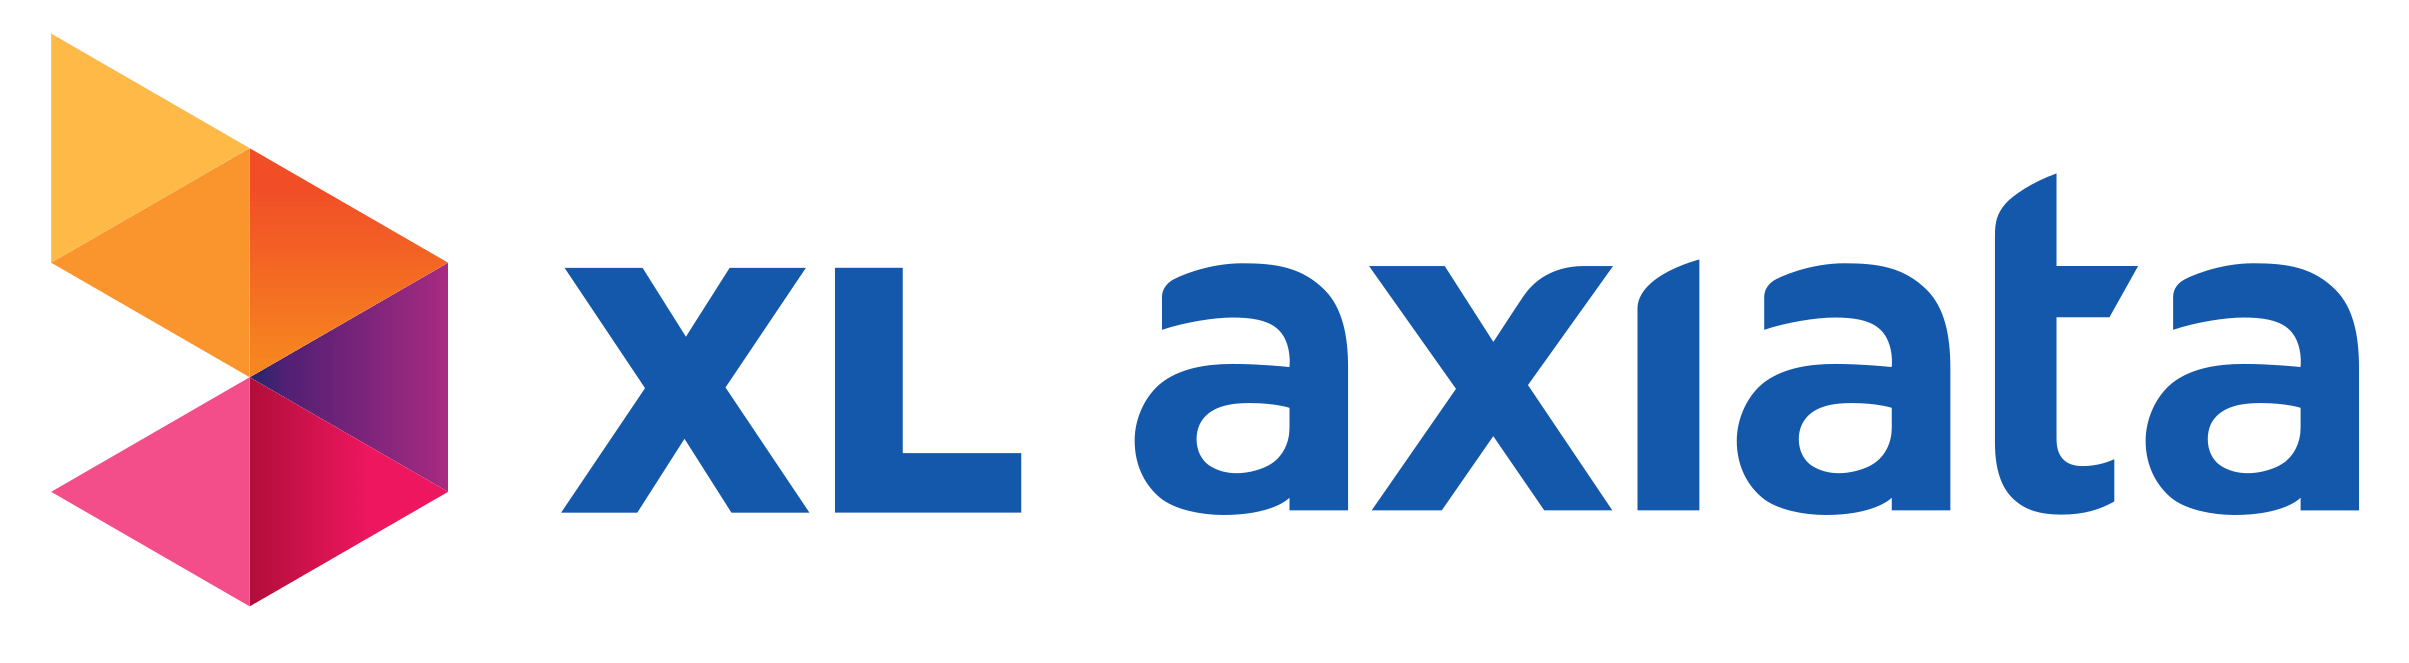 xl_axiata_logo